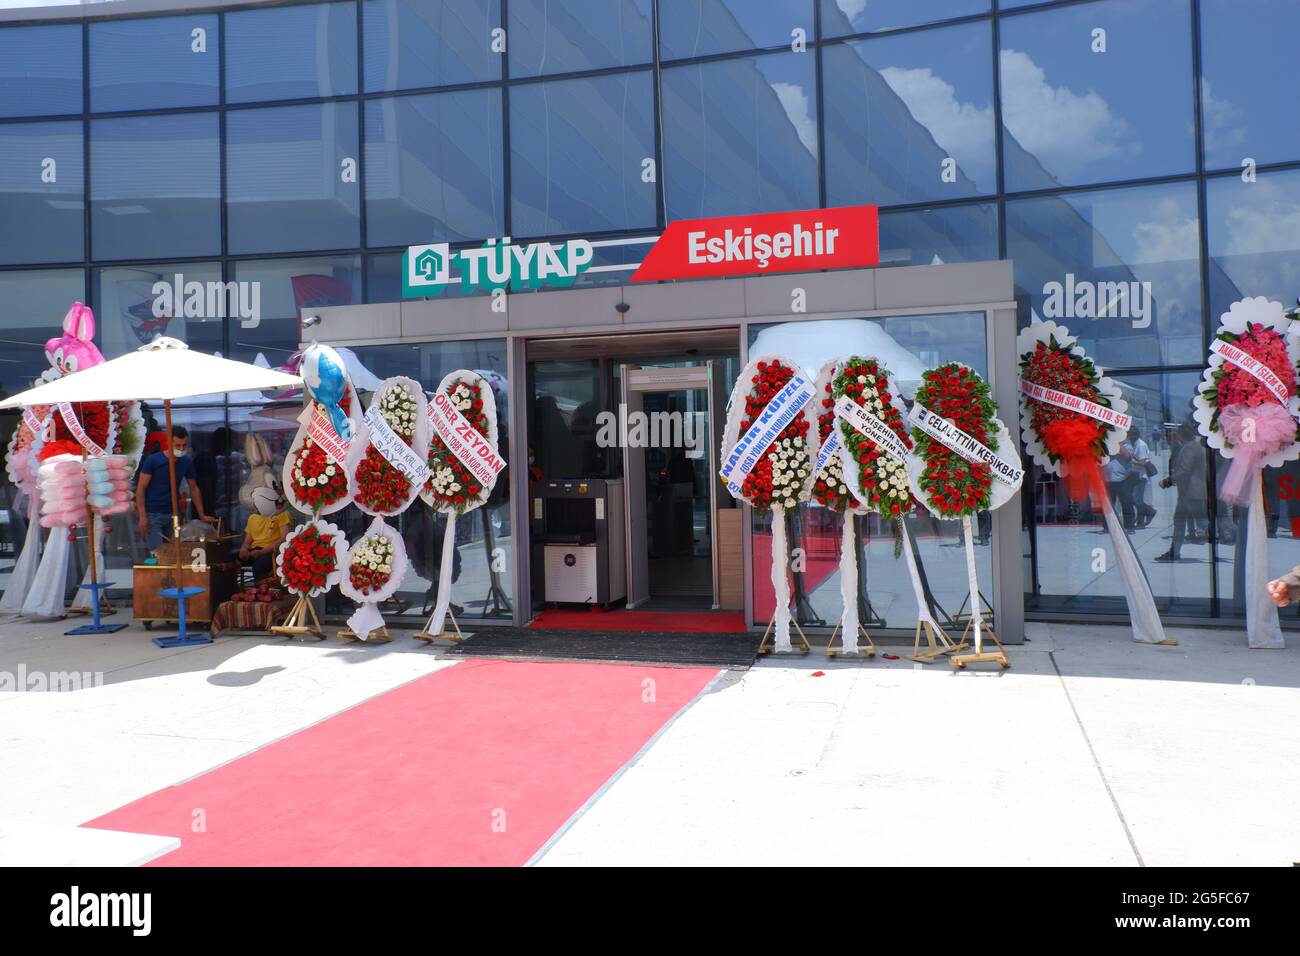 Eingang zum Messegelände TUYAP Eskisehir mit Glückwunschkränzen zur Eröffnung Stockfoto